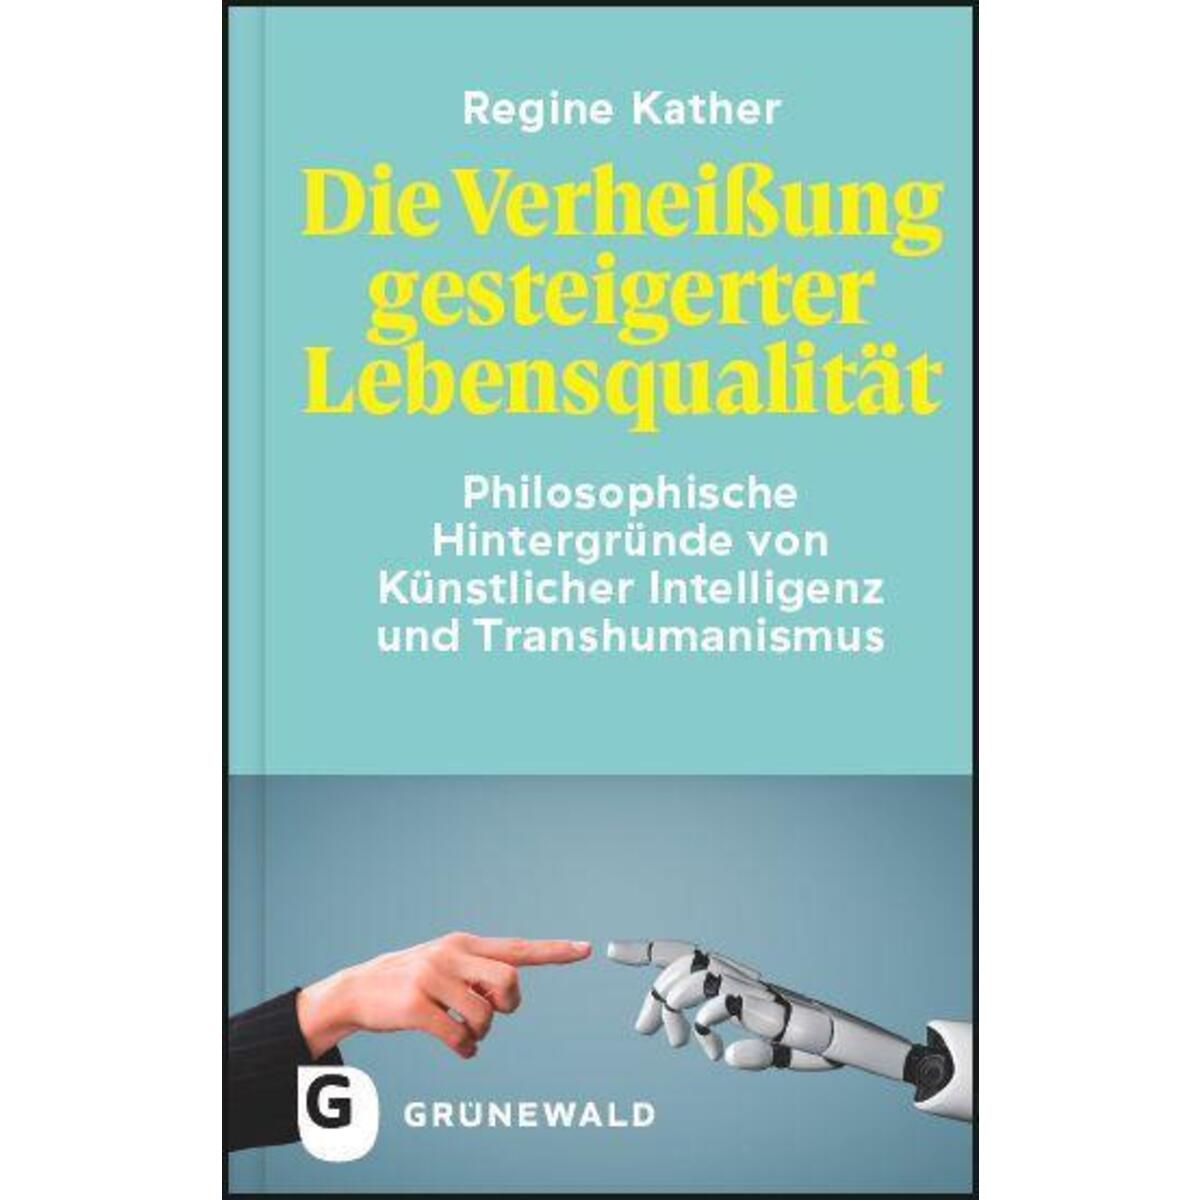 Die Verheißung gesteigerter Lebensqualität von Matthias-Grünewald-Verlag